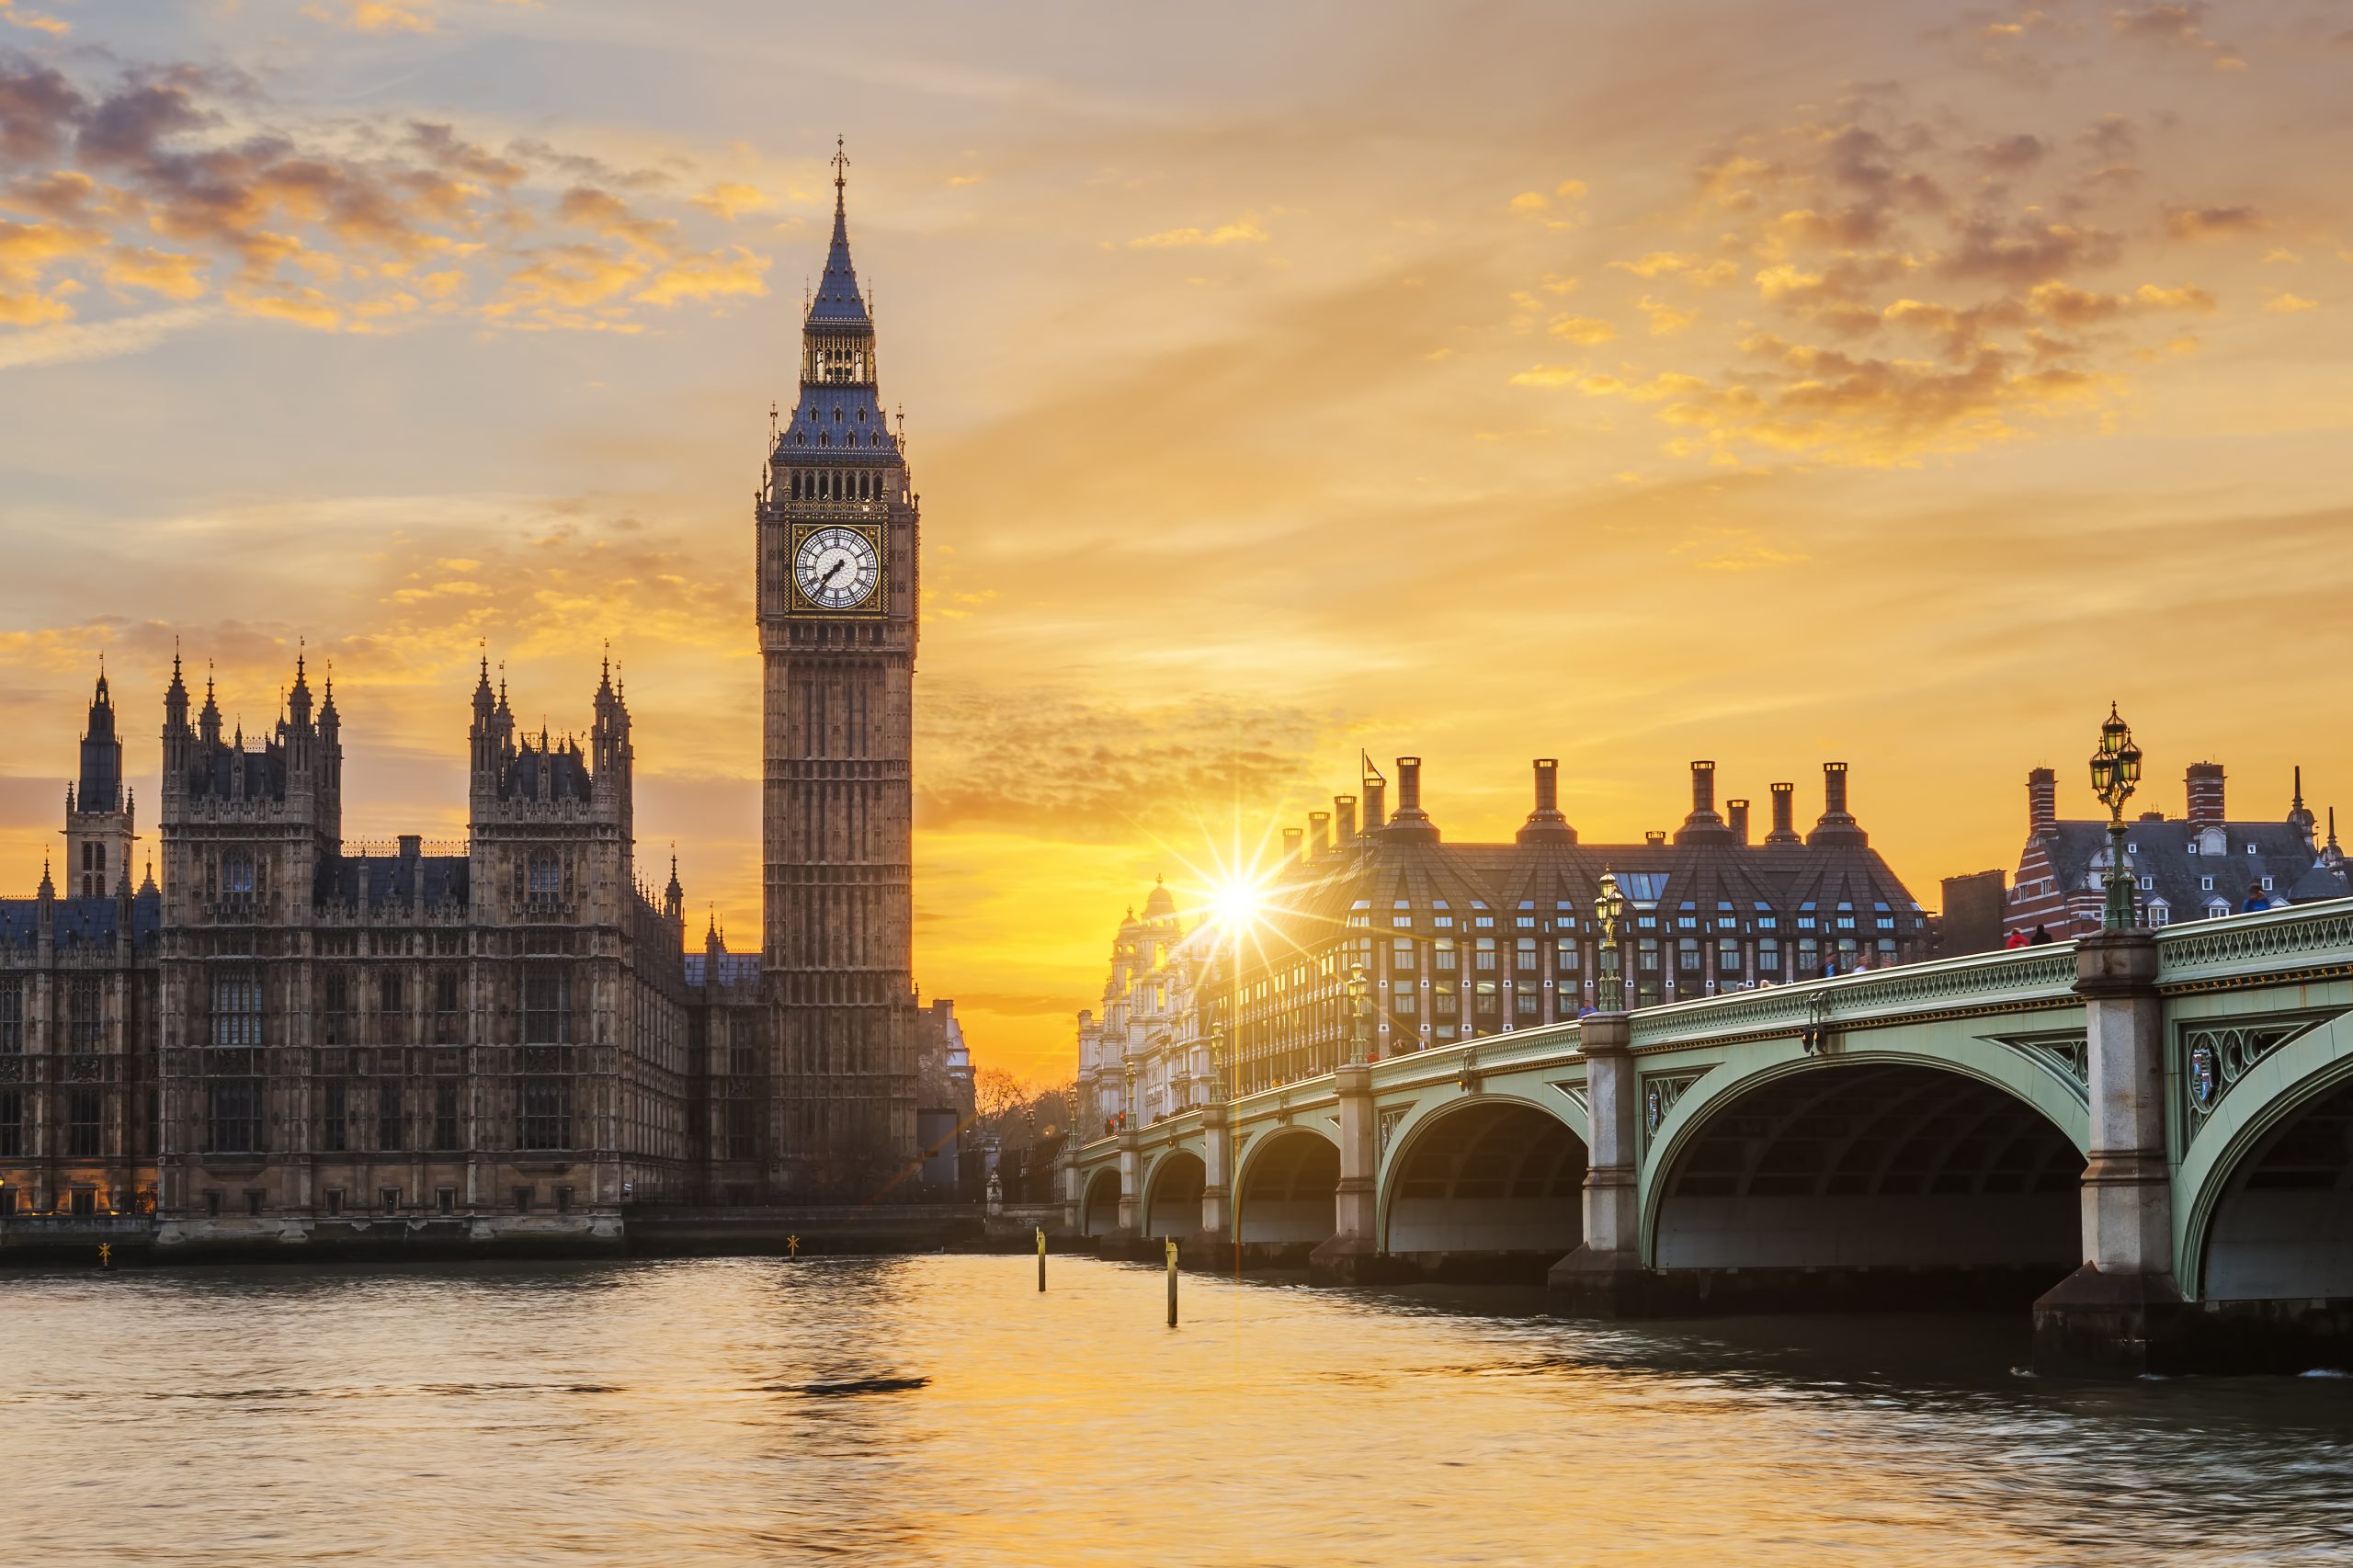 Londra: O Călătorie Regală într-un City Break